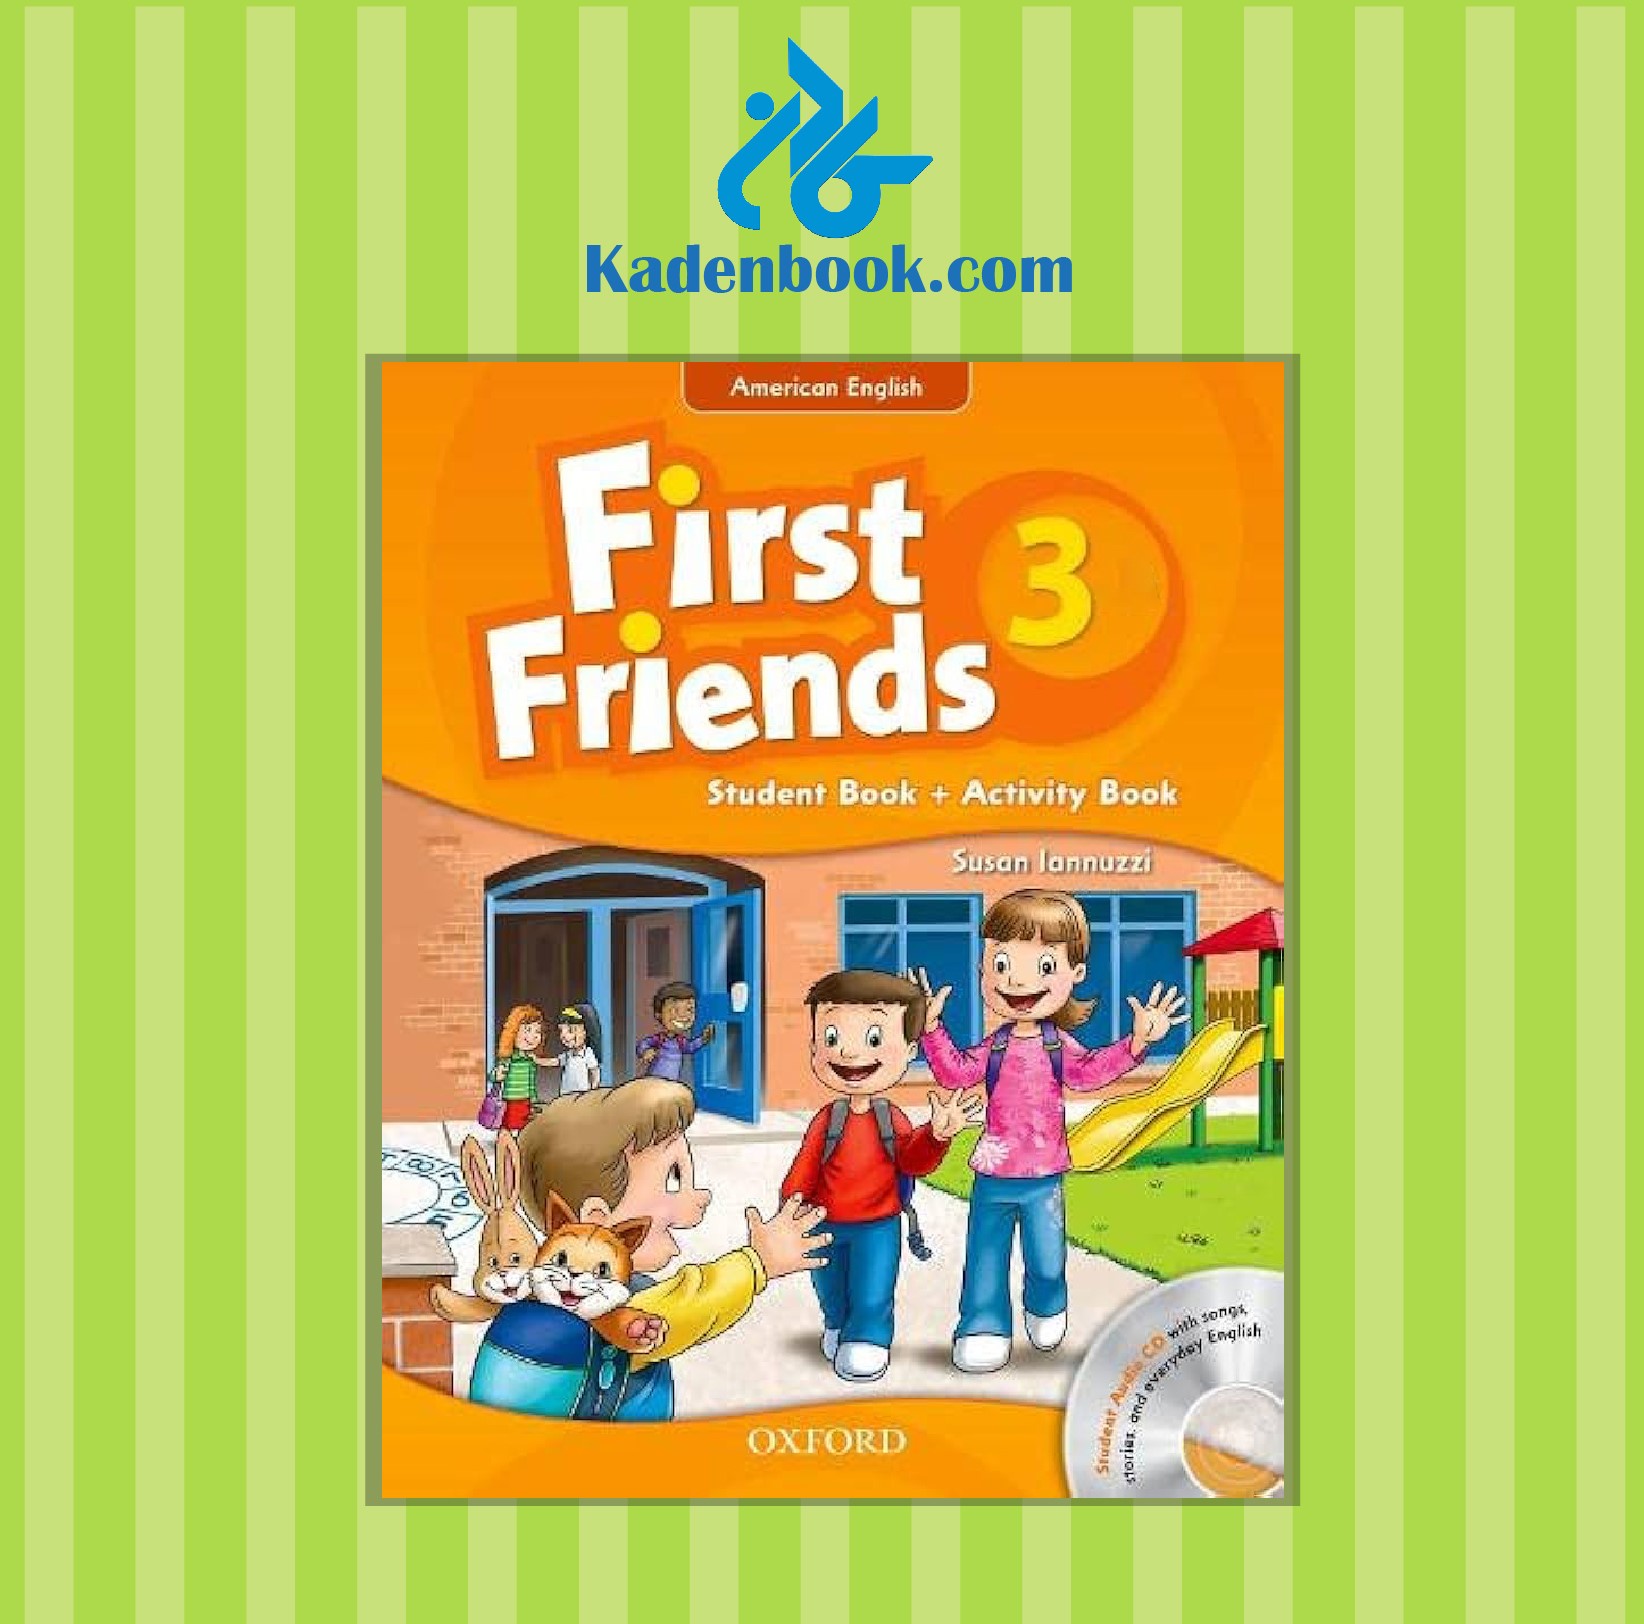 کتاب امریکن فرست فرندز American First Friends 3